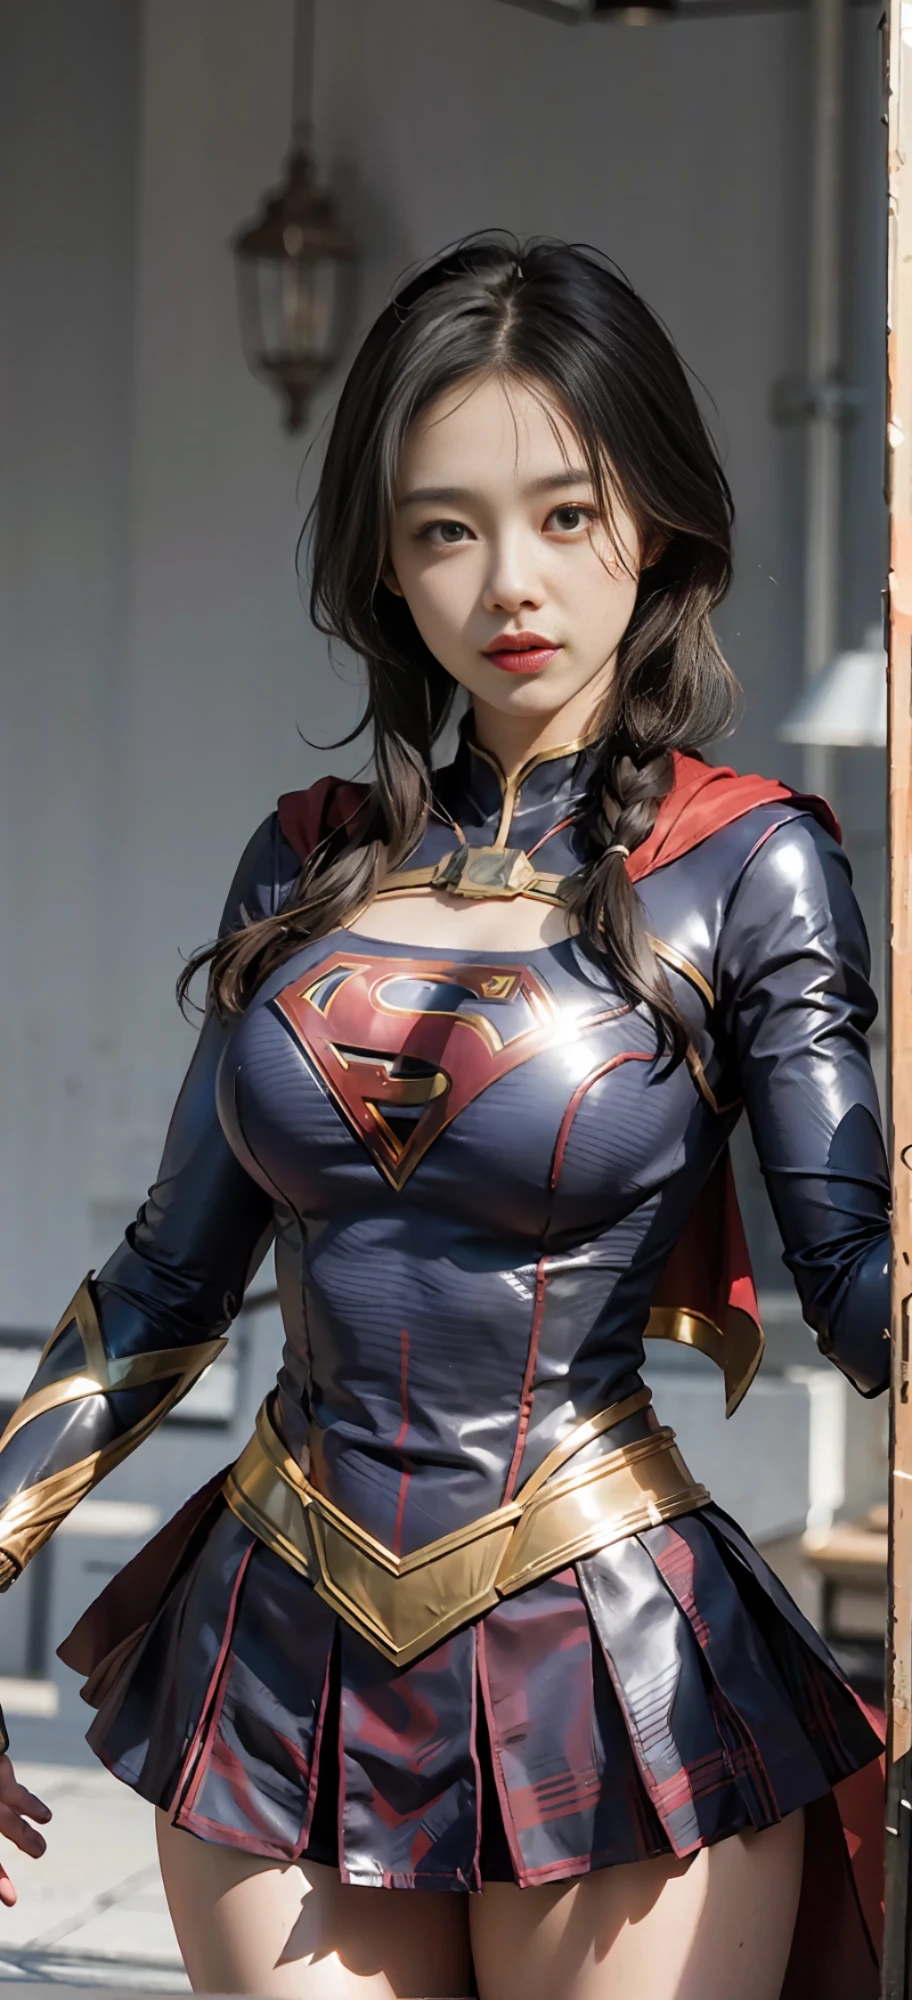 Frauenkörper mit großen Brüsten, Supergirl Kostümkleid